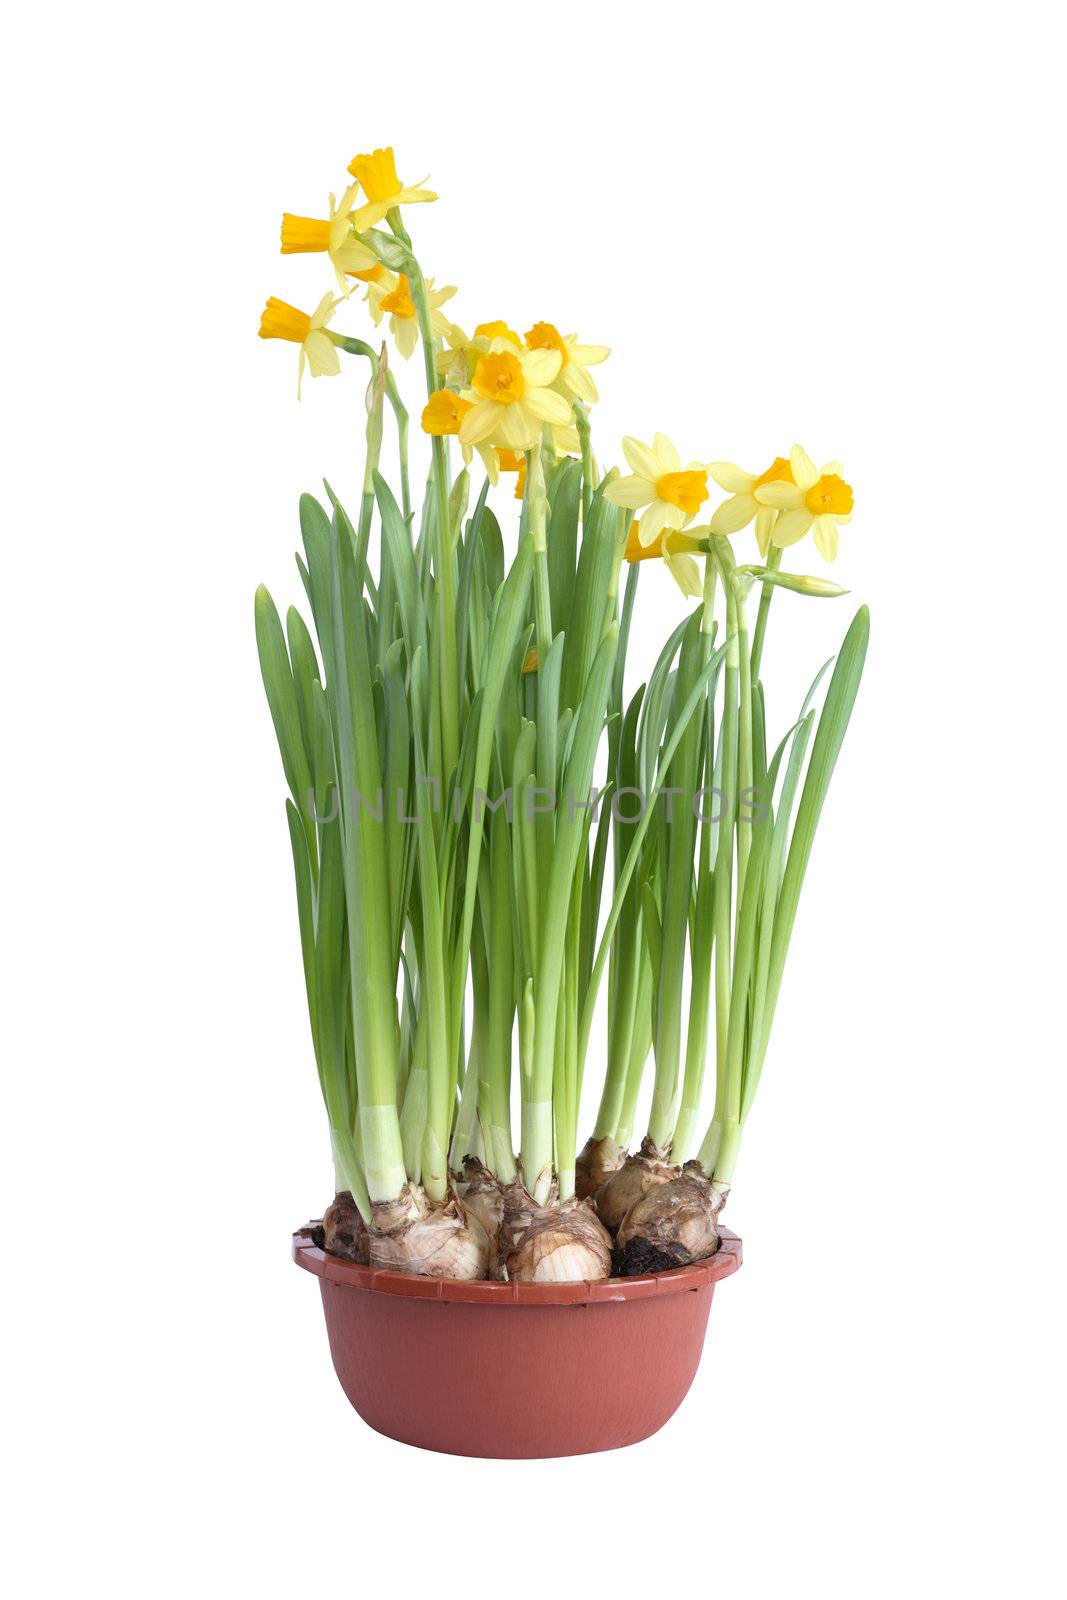 Daffodils In Pot by kvkirillov